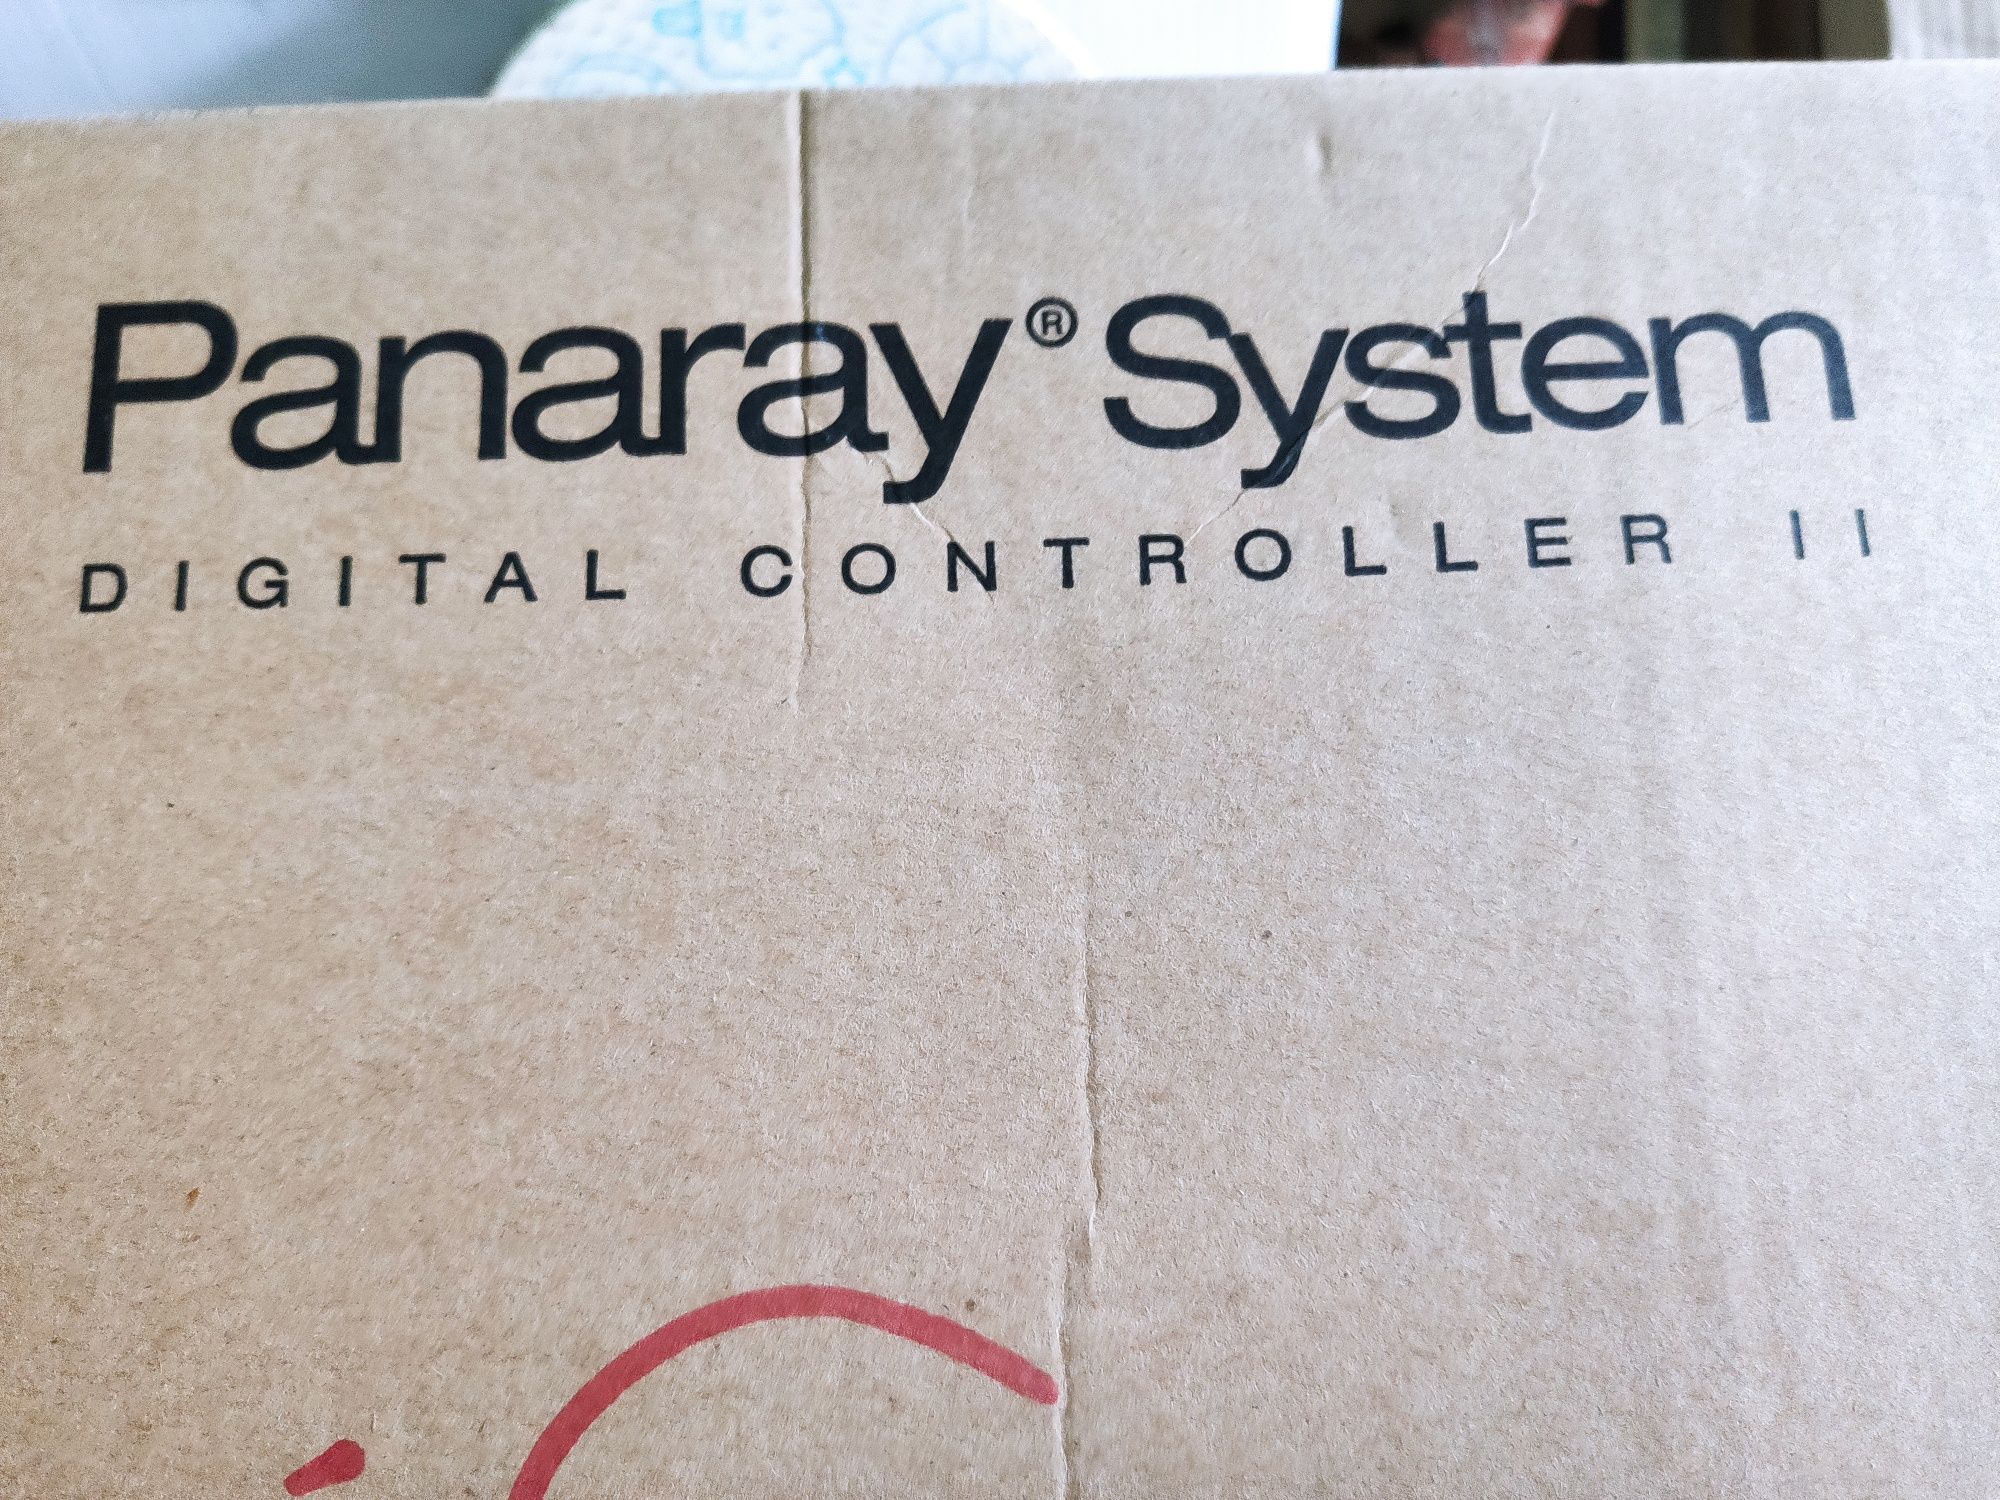 Bose Panaray System B502 Entero 4400 Entero 4200 Nówka w pudełkach